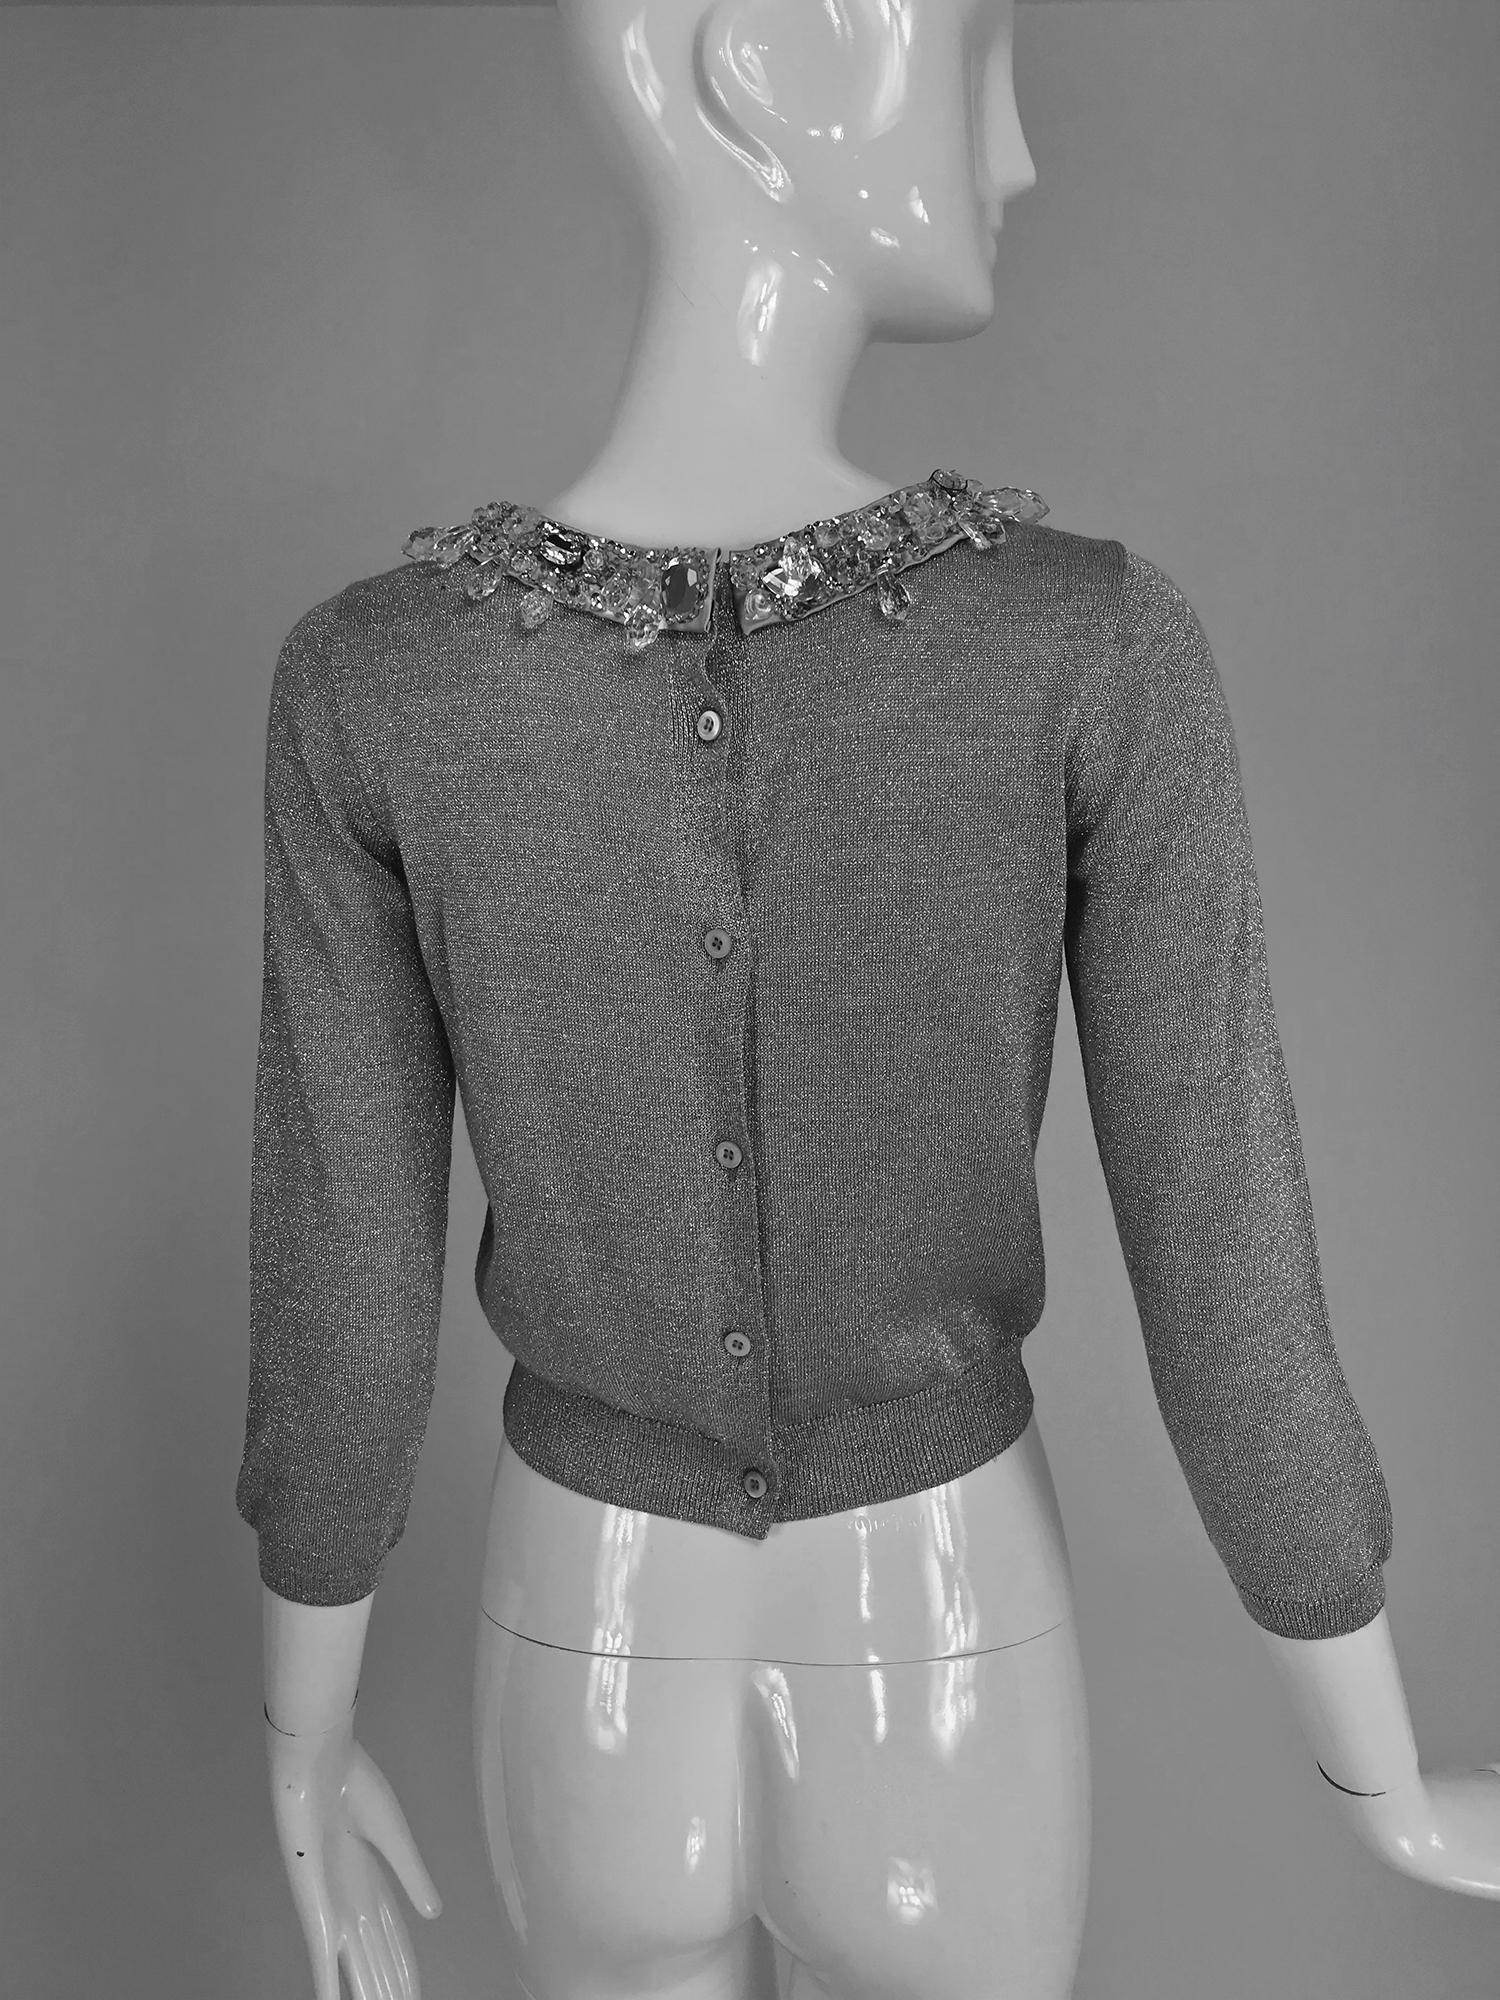 Women's Prada silver metallic grey rhinestone collar cardigan sweater